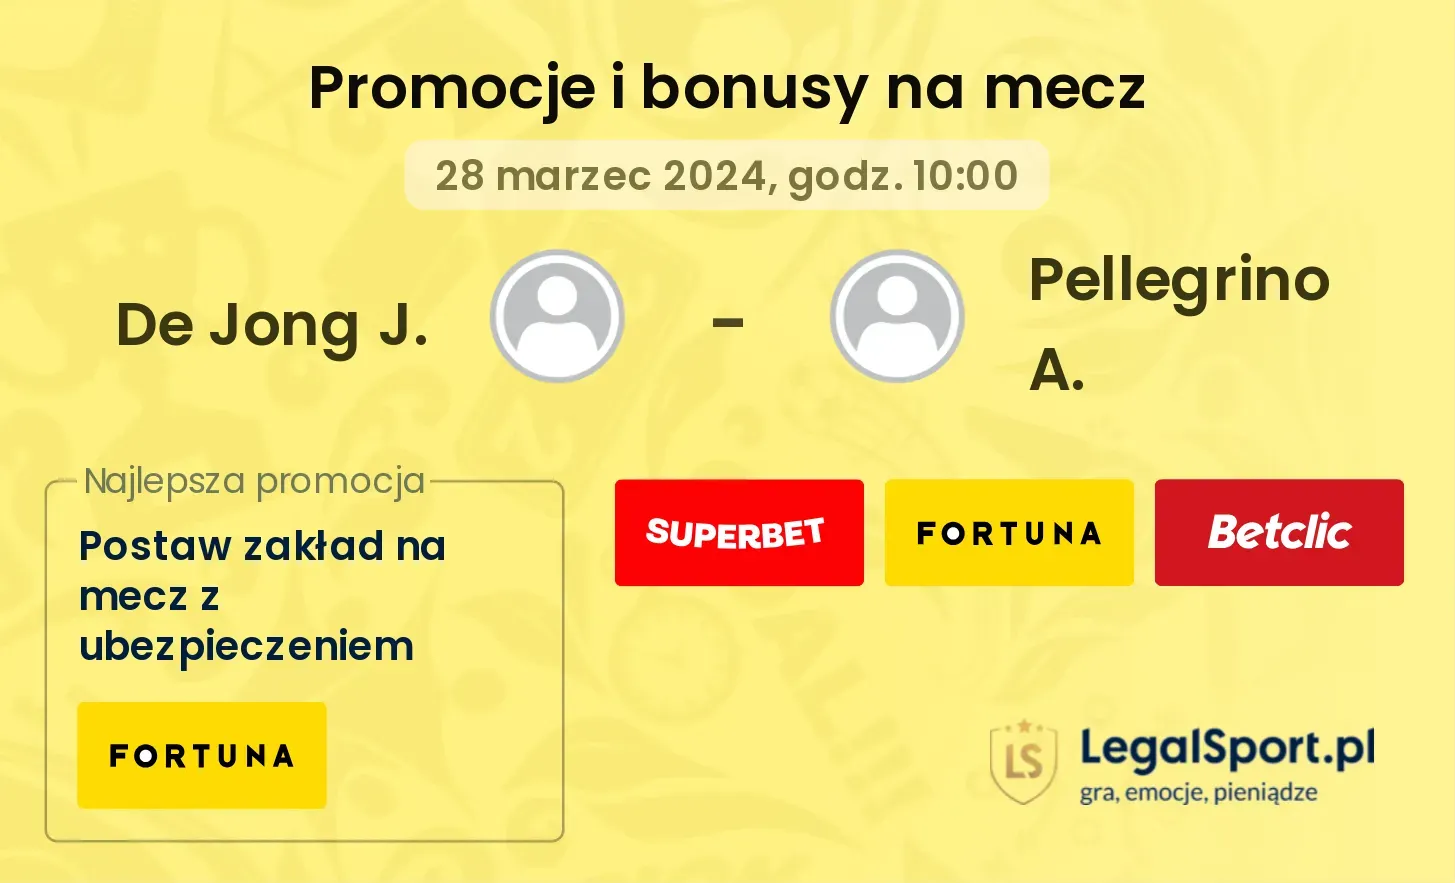 De Jong J. - Pellegrino A. promocje bonusy na mecz